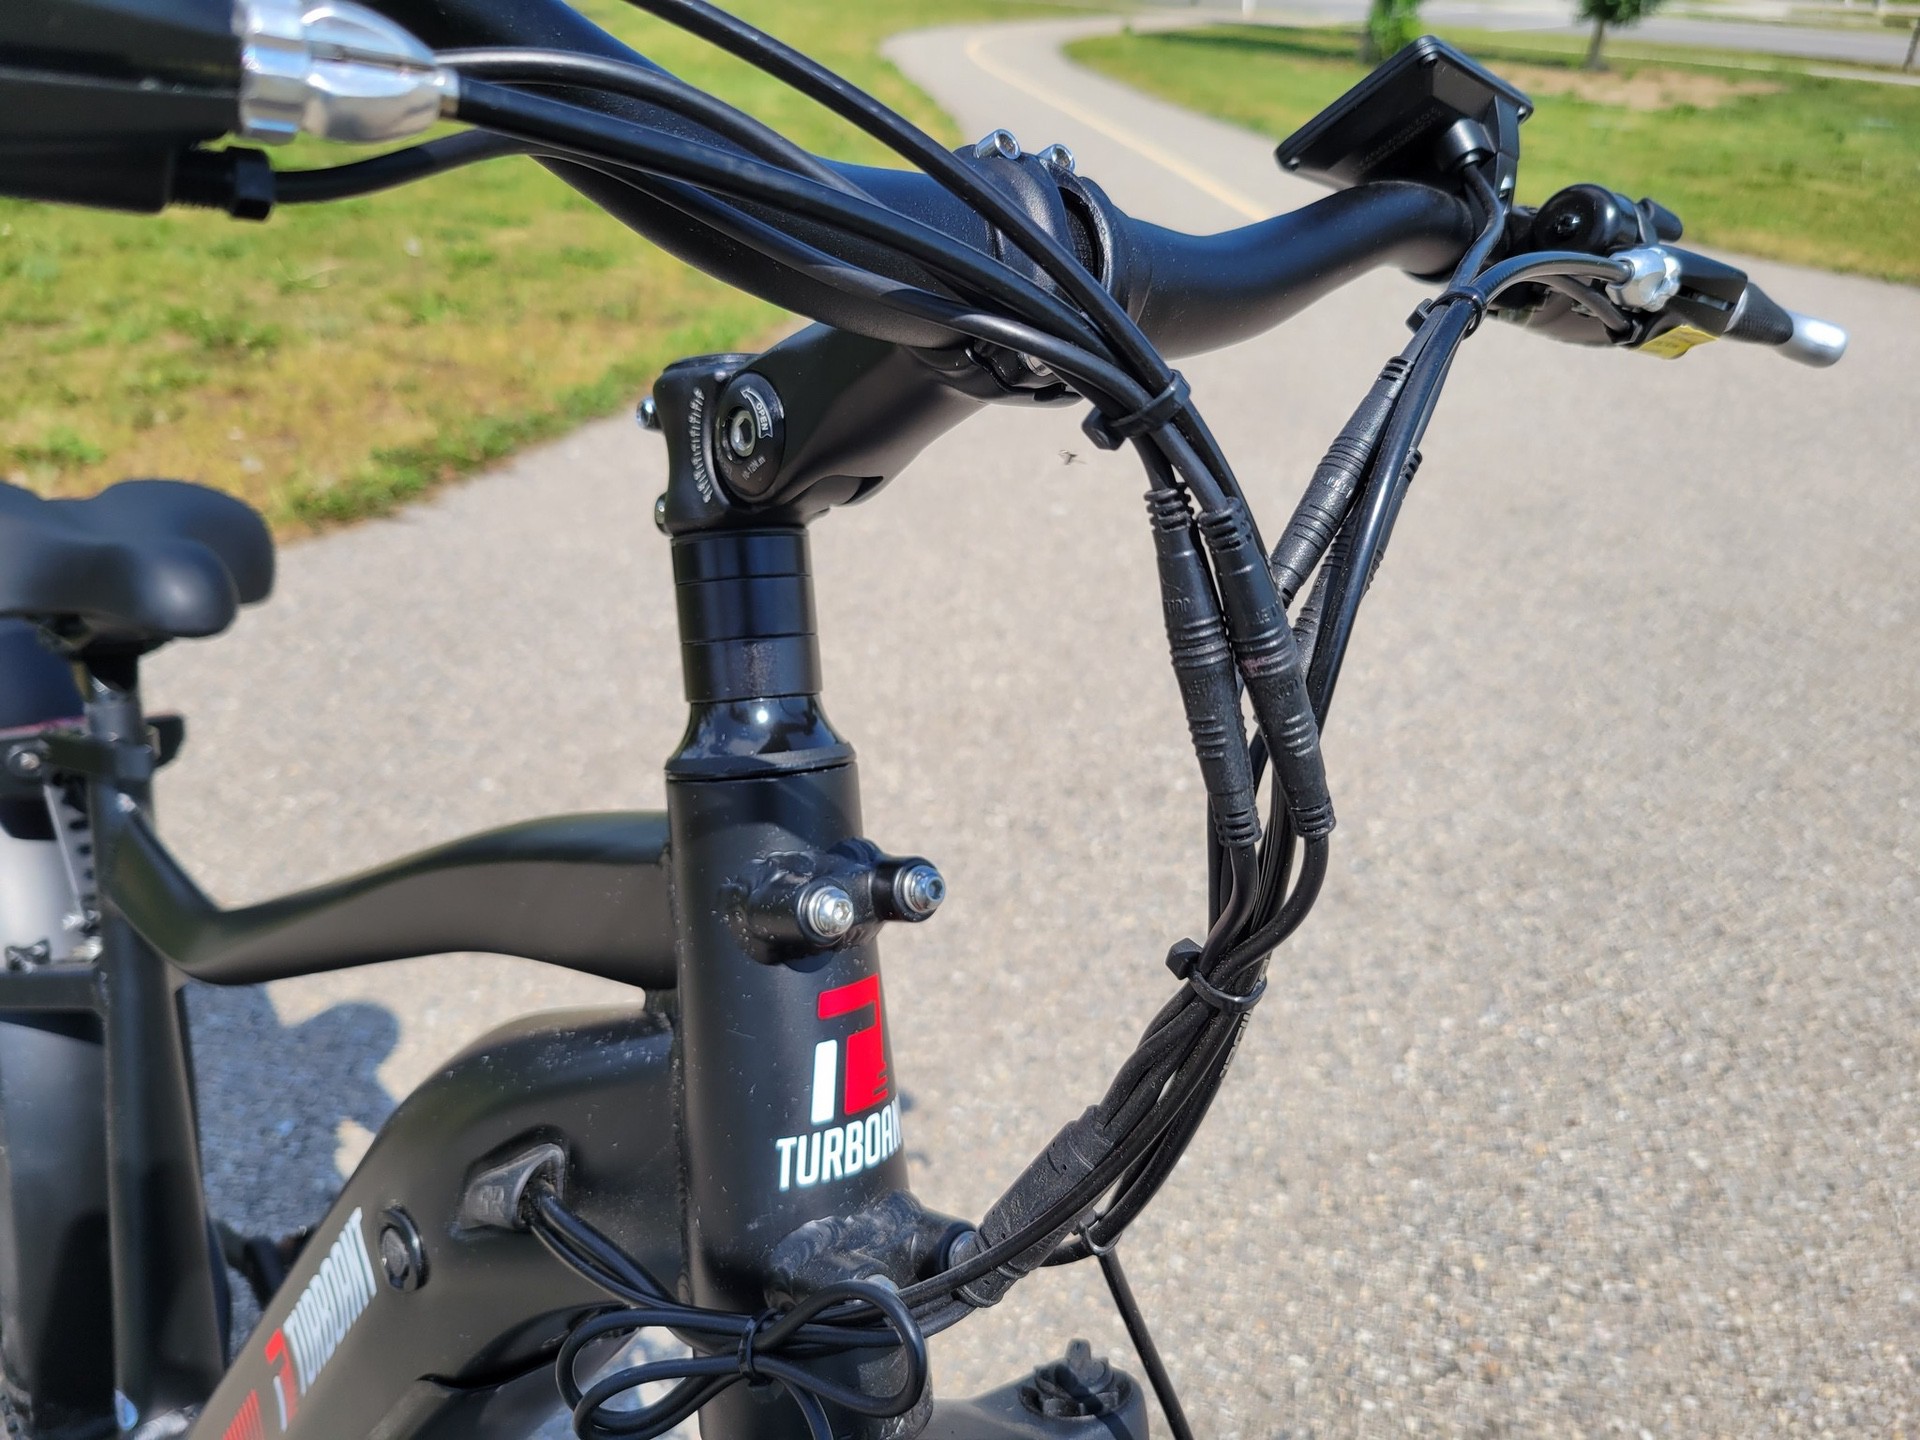 Handlebars and front fork of TurboAnt Nebula N1 Electric Bike